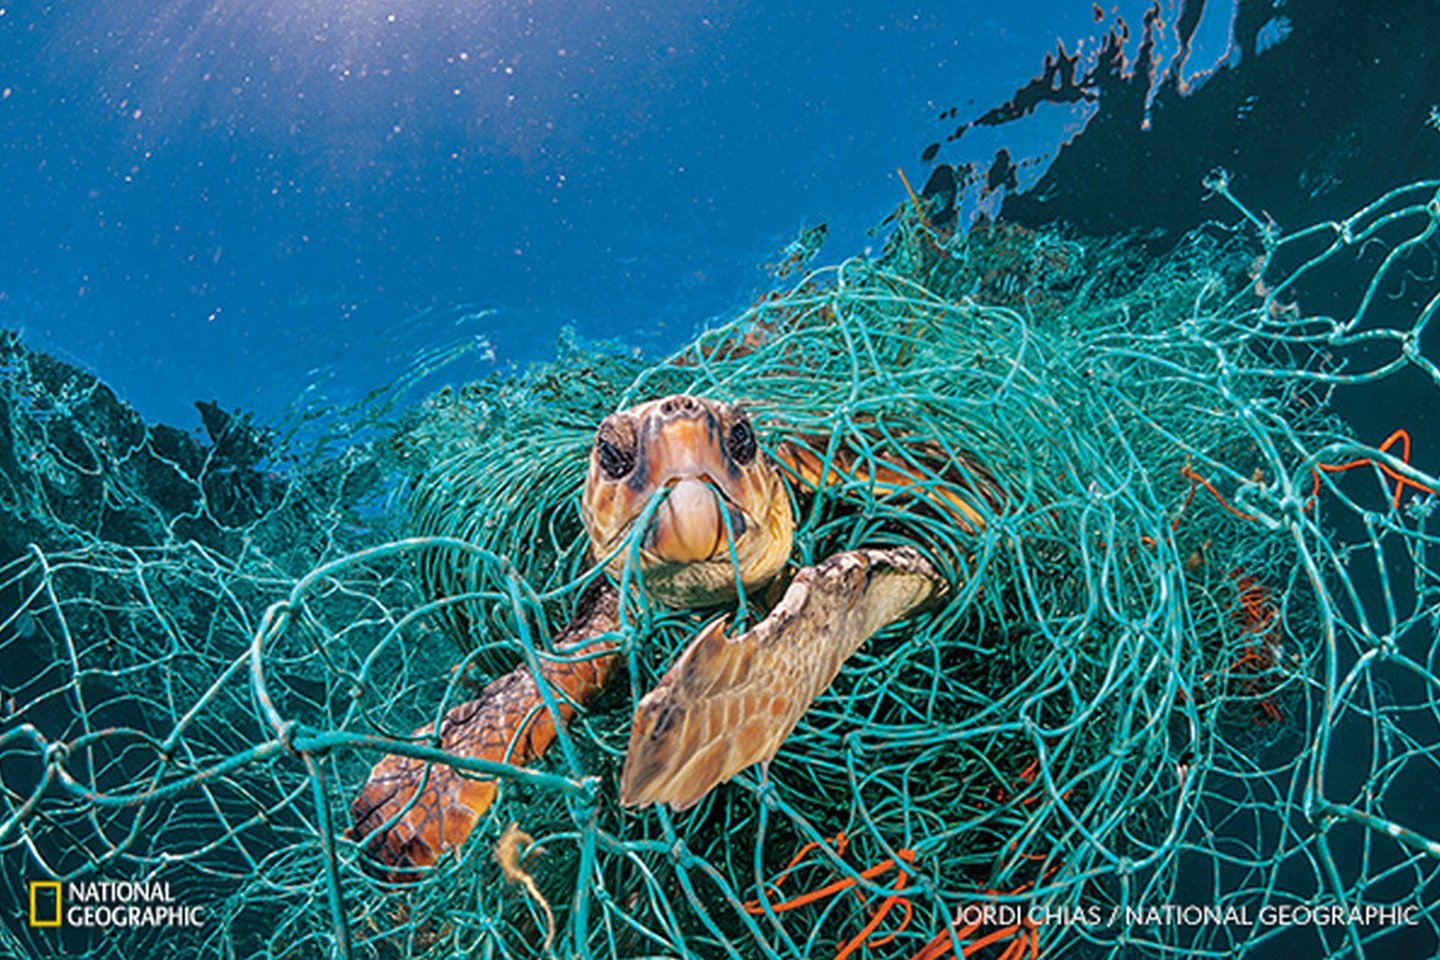 Logerhedas, įsipainiojęs į seną plastikinį žvejybinį tinklą Viduržemio jūroje prie Ispanijos krantų. Vėžlys pajėgė kvėpuoti ištempęs kaklą virš vandens, bet jei fotografas nebūtų jo išlaisvinęs, laikui bėgant gyvūnas būtų nugaišęs.<br>„National Geographic Lietuva“ nuotr.